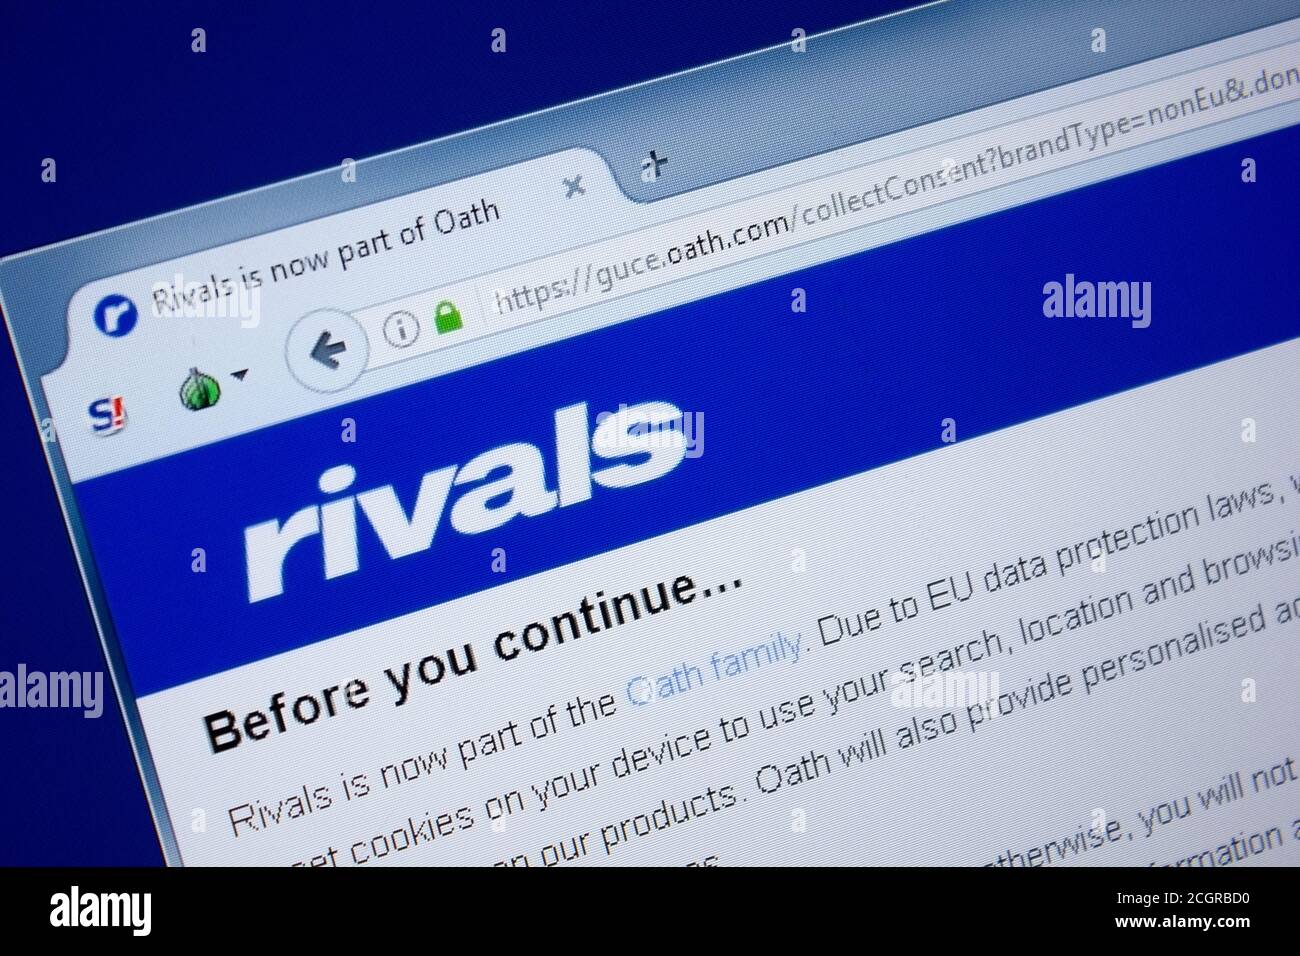 Ryazan, Russie - 09 septembre 2018: Page d'accueil du site de Rivals sur l'affichage de PC, url - Rivals. Banque D'Images